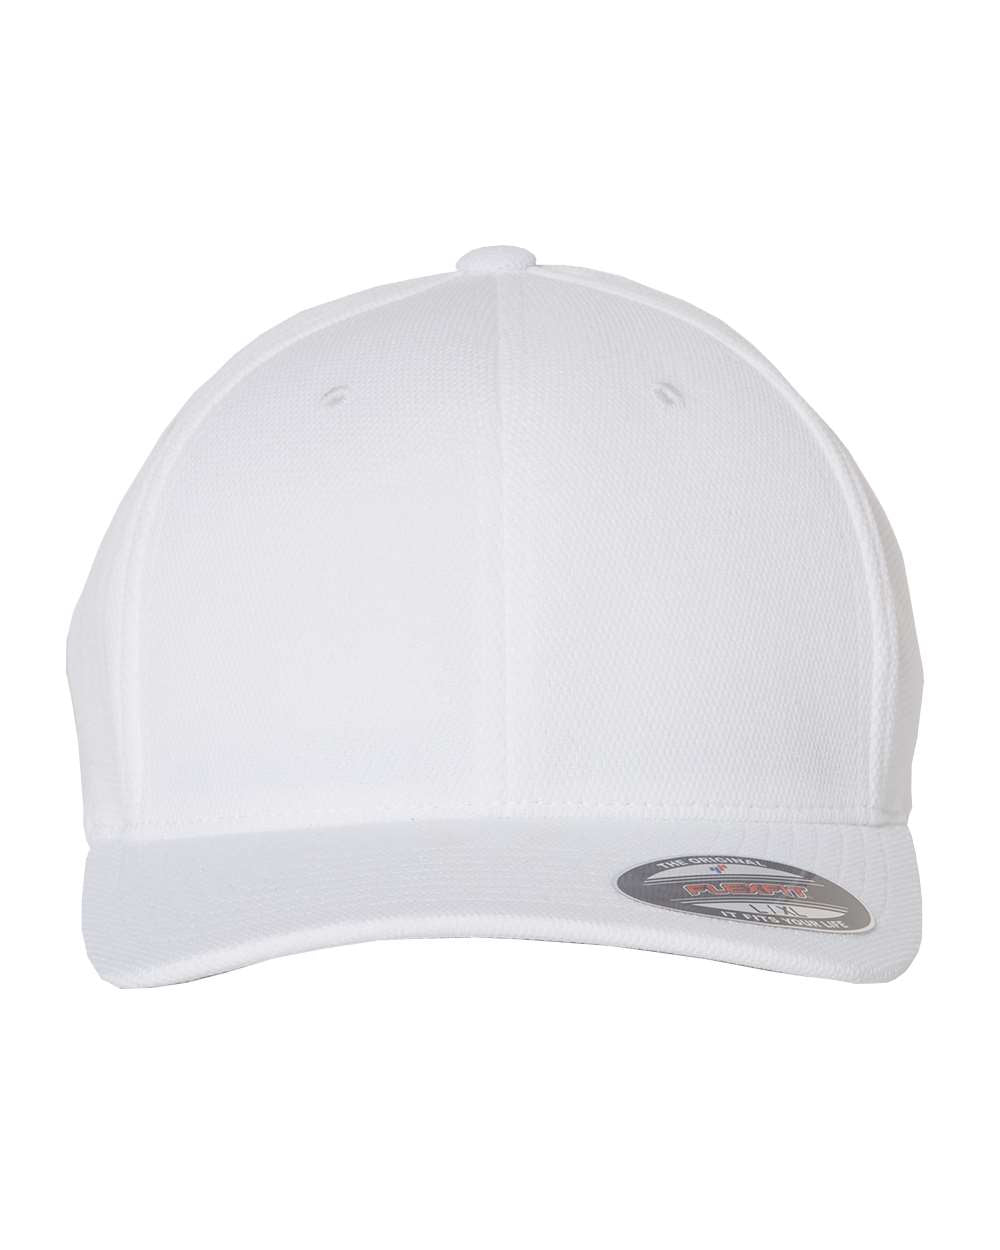 Flexfit Cool & Dry Sport Cap 6597 #color_White